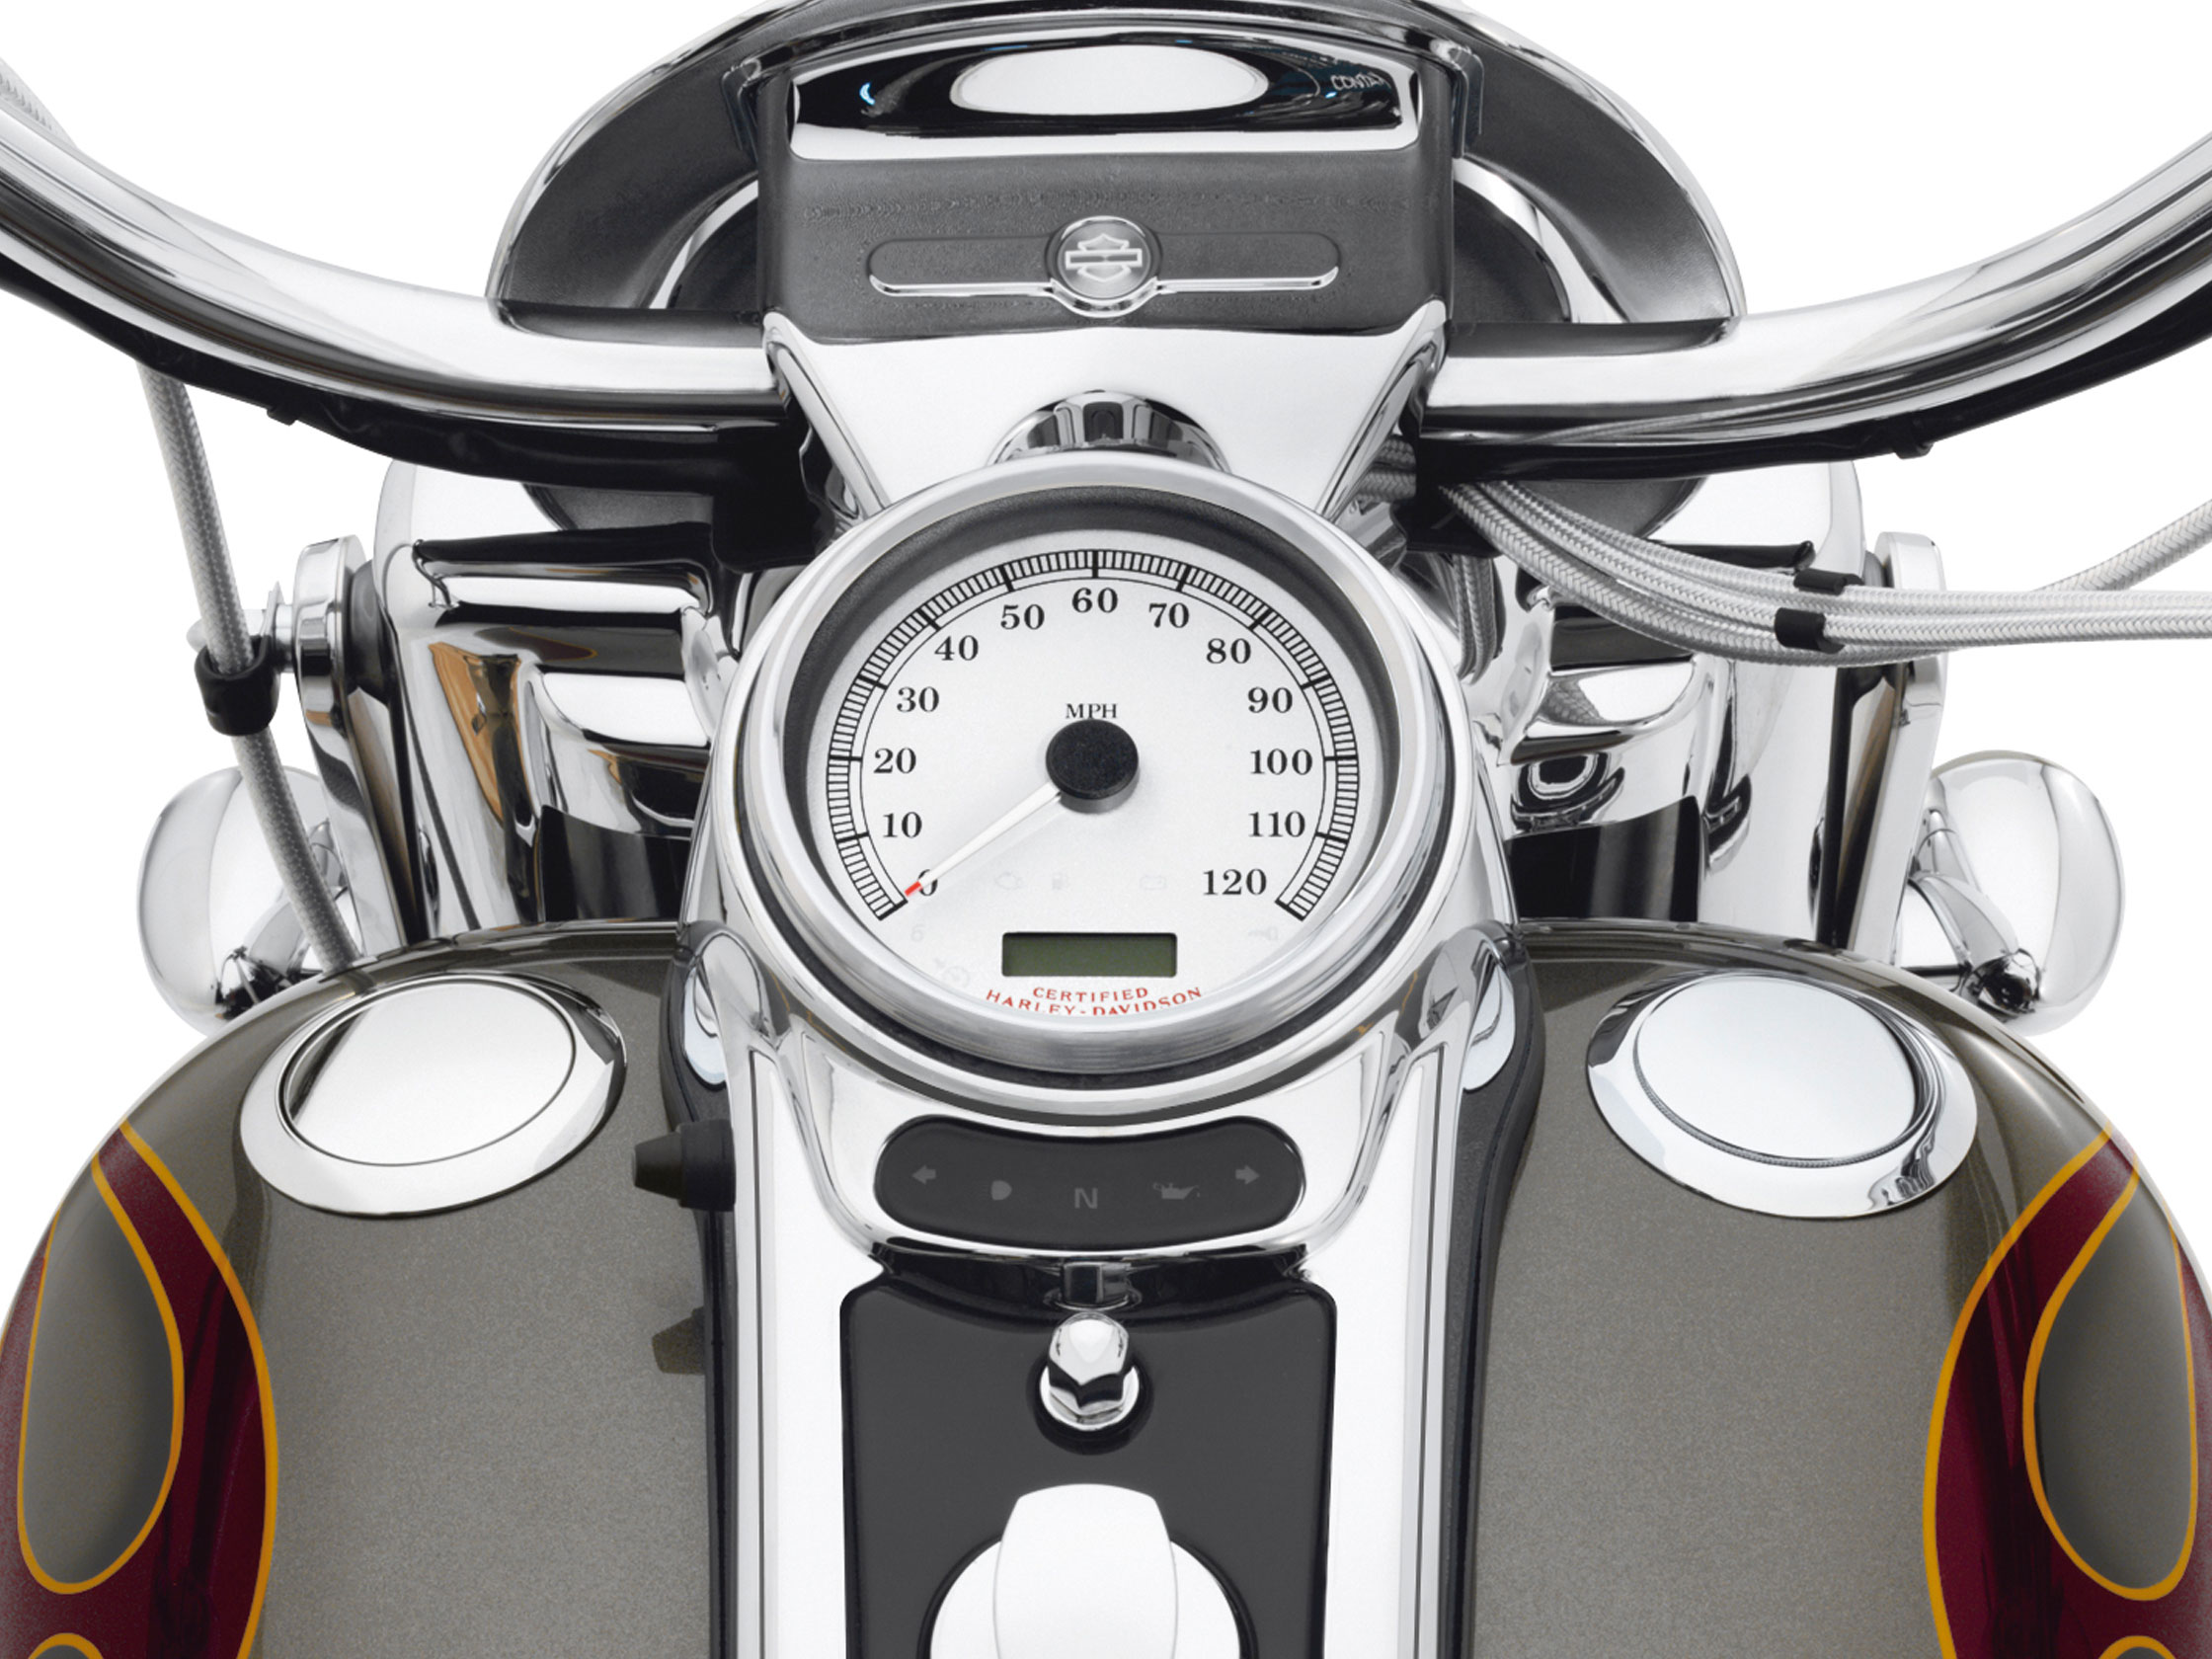 Motorrad-Tankdeckel stockfoto. Bild von chrom, ausrüstung - 61199402